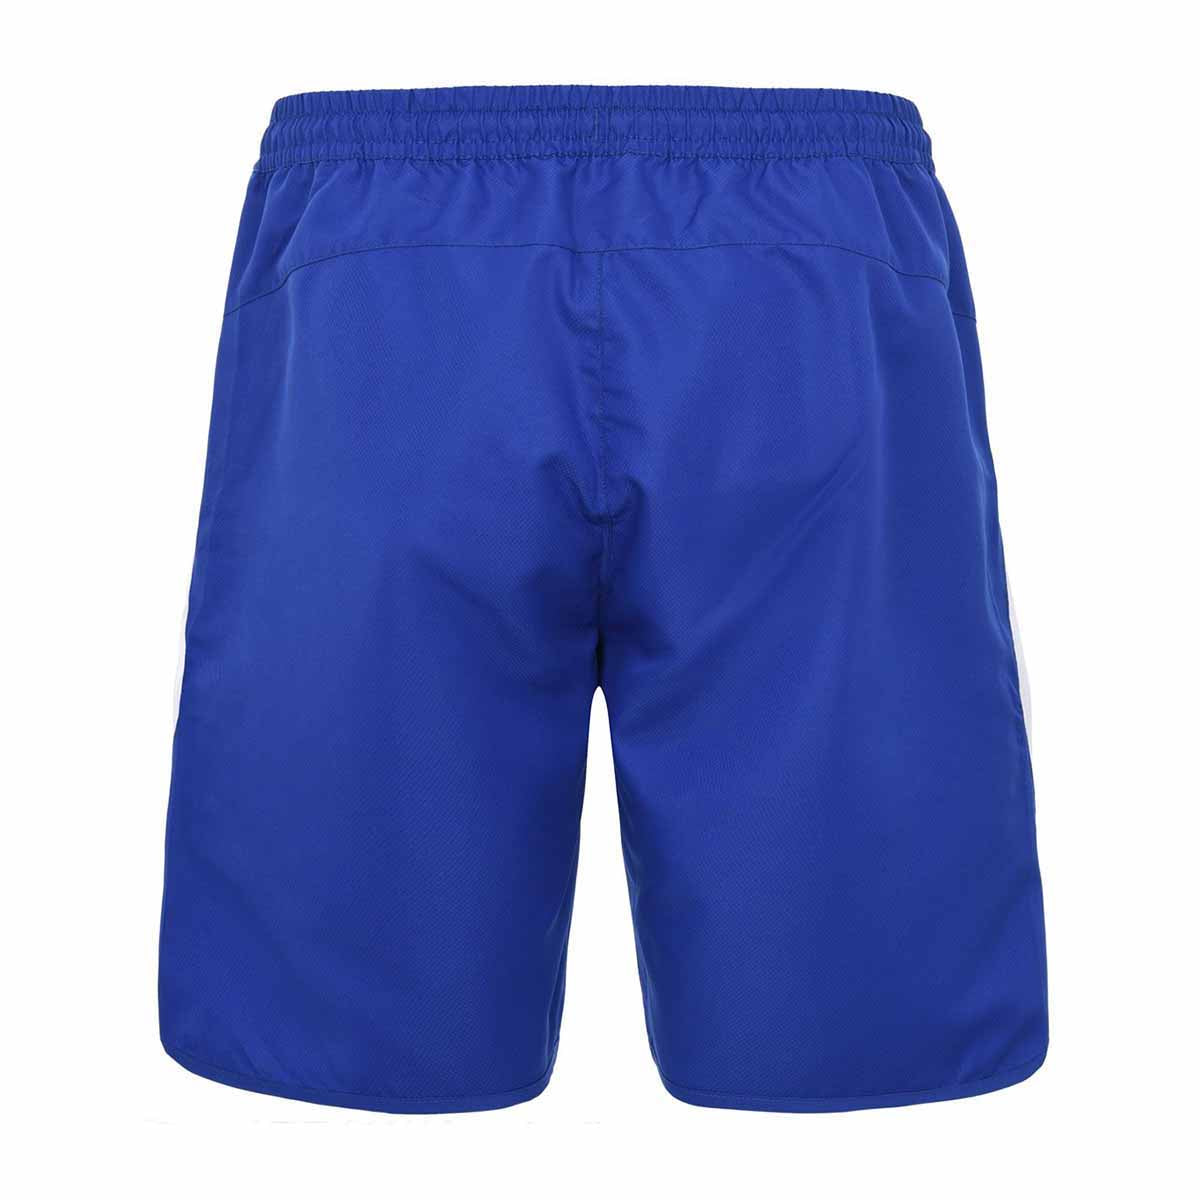 Pantalones cortos Acera Azul Hombre